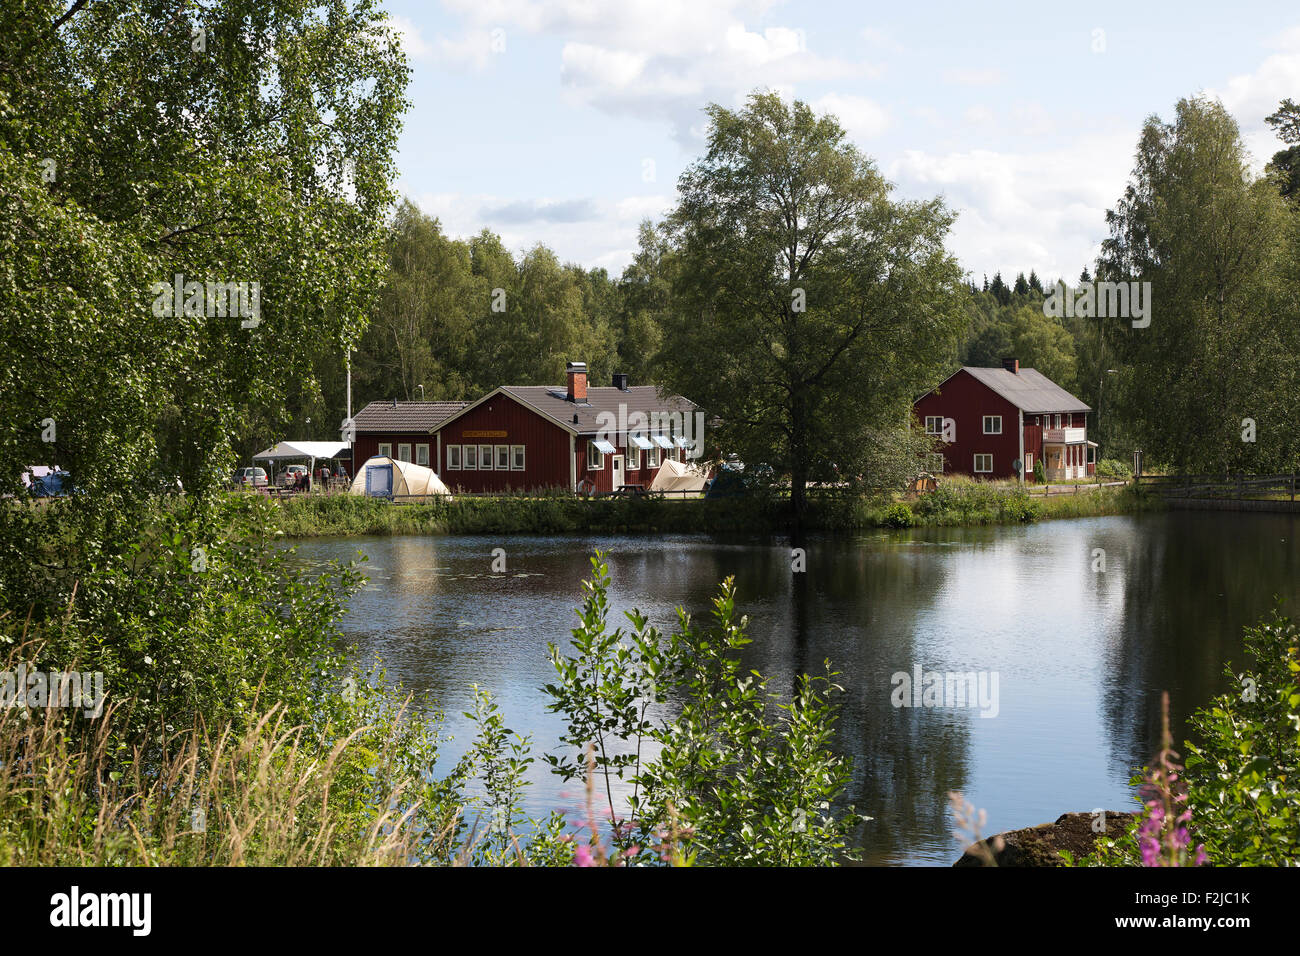 Glaskogen Camping, Glaskogen Nature Reserve, Varmland, Sweden Stock Photo